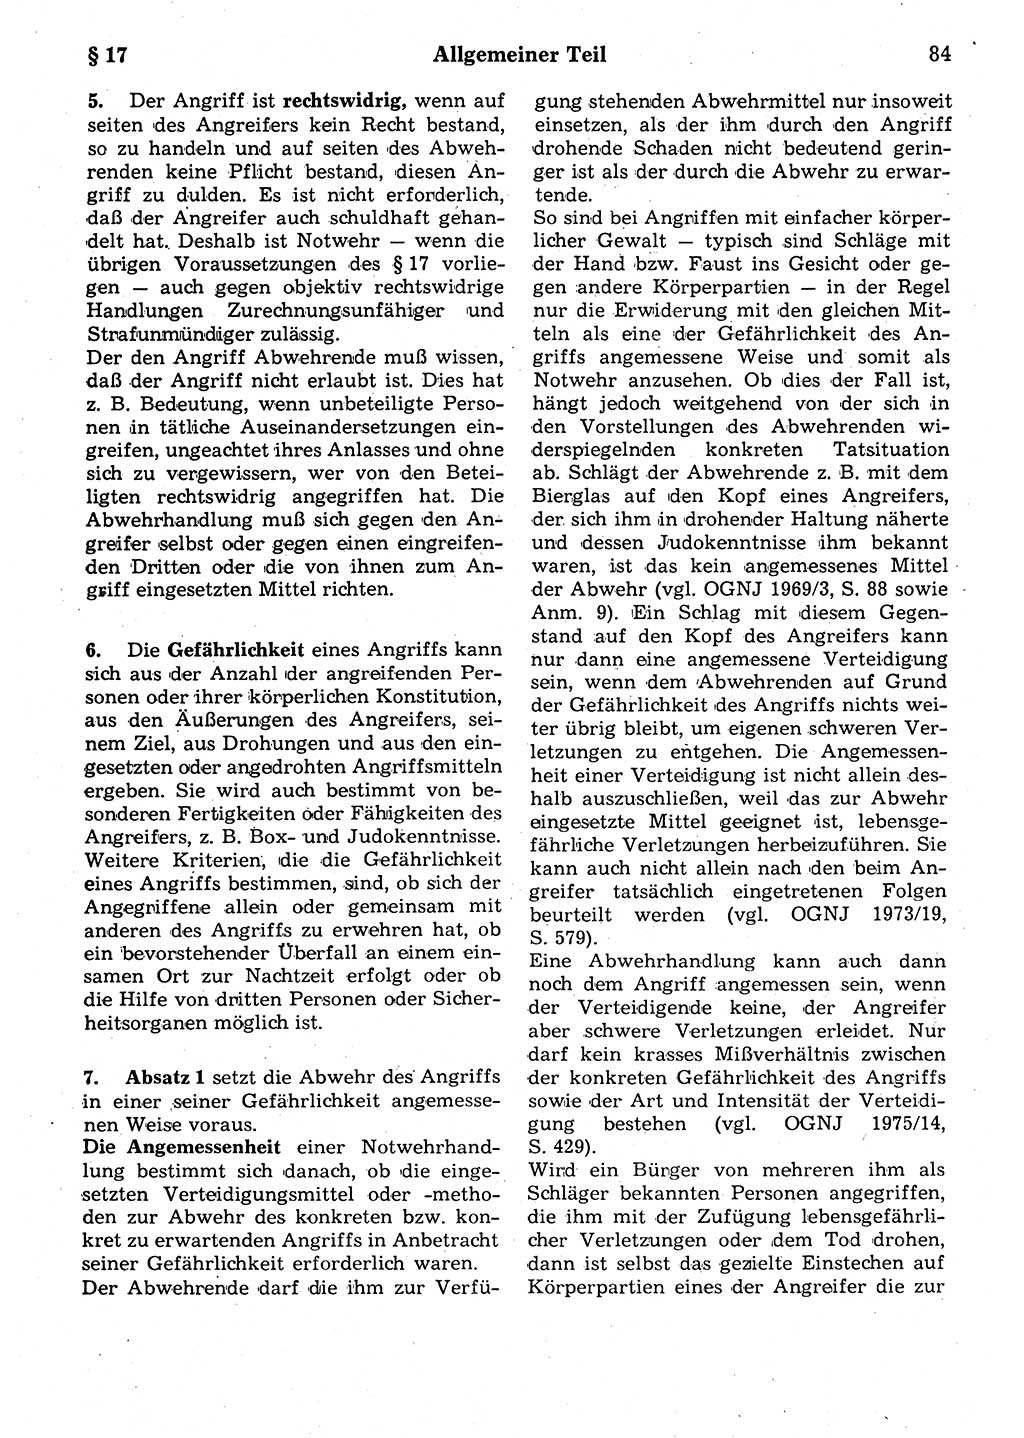 Strafrecht der Deutschen Demokratischen Republik (DDR), Kommentar zum Strafgesetzbuch (StGB) 1987, Seite 84 (Strafr. DDR Komm. StGB 1987, S. 84)